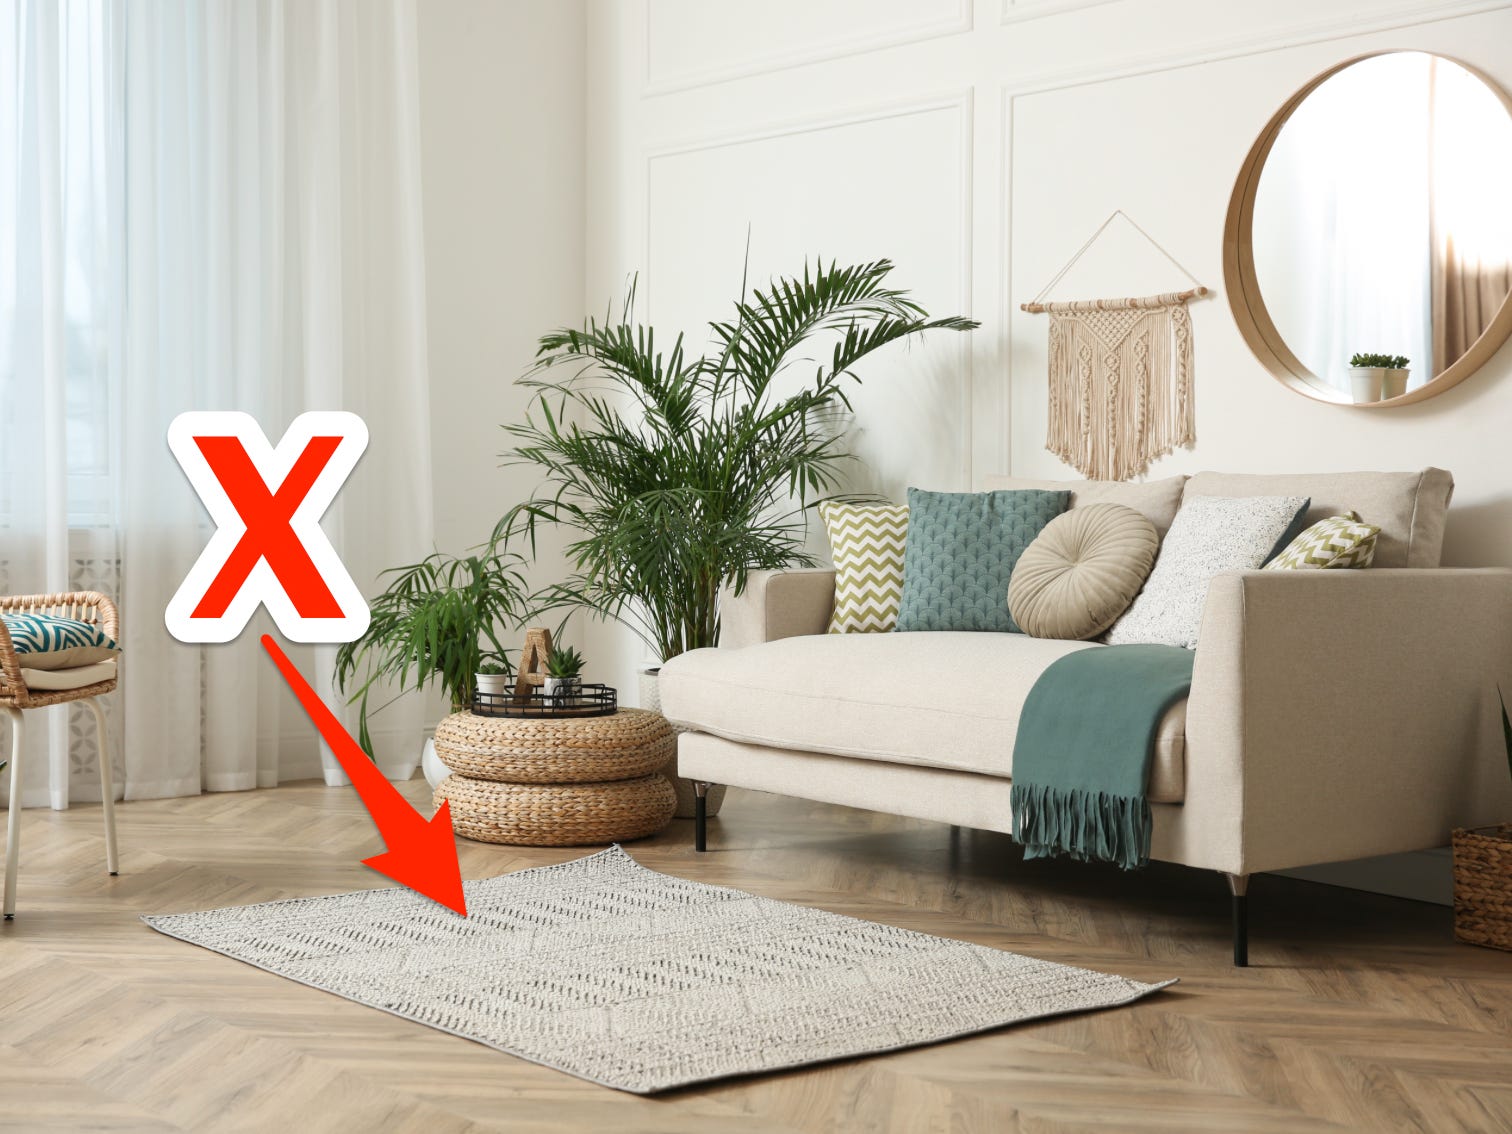 Rotes X und Pfeil zeigen auf einen kleinen strukturierten Teppich in einem modernen Wohnzimmer